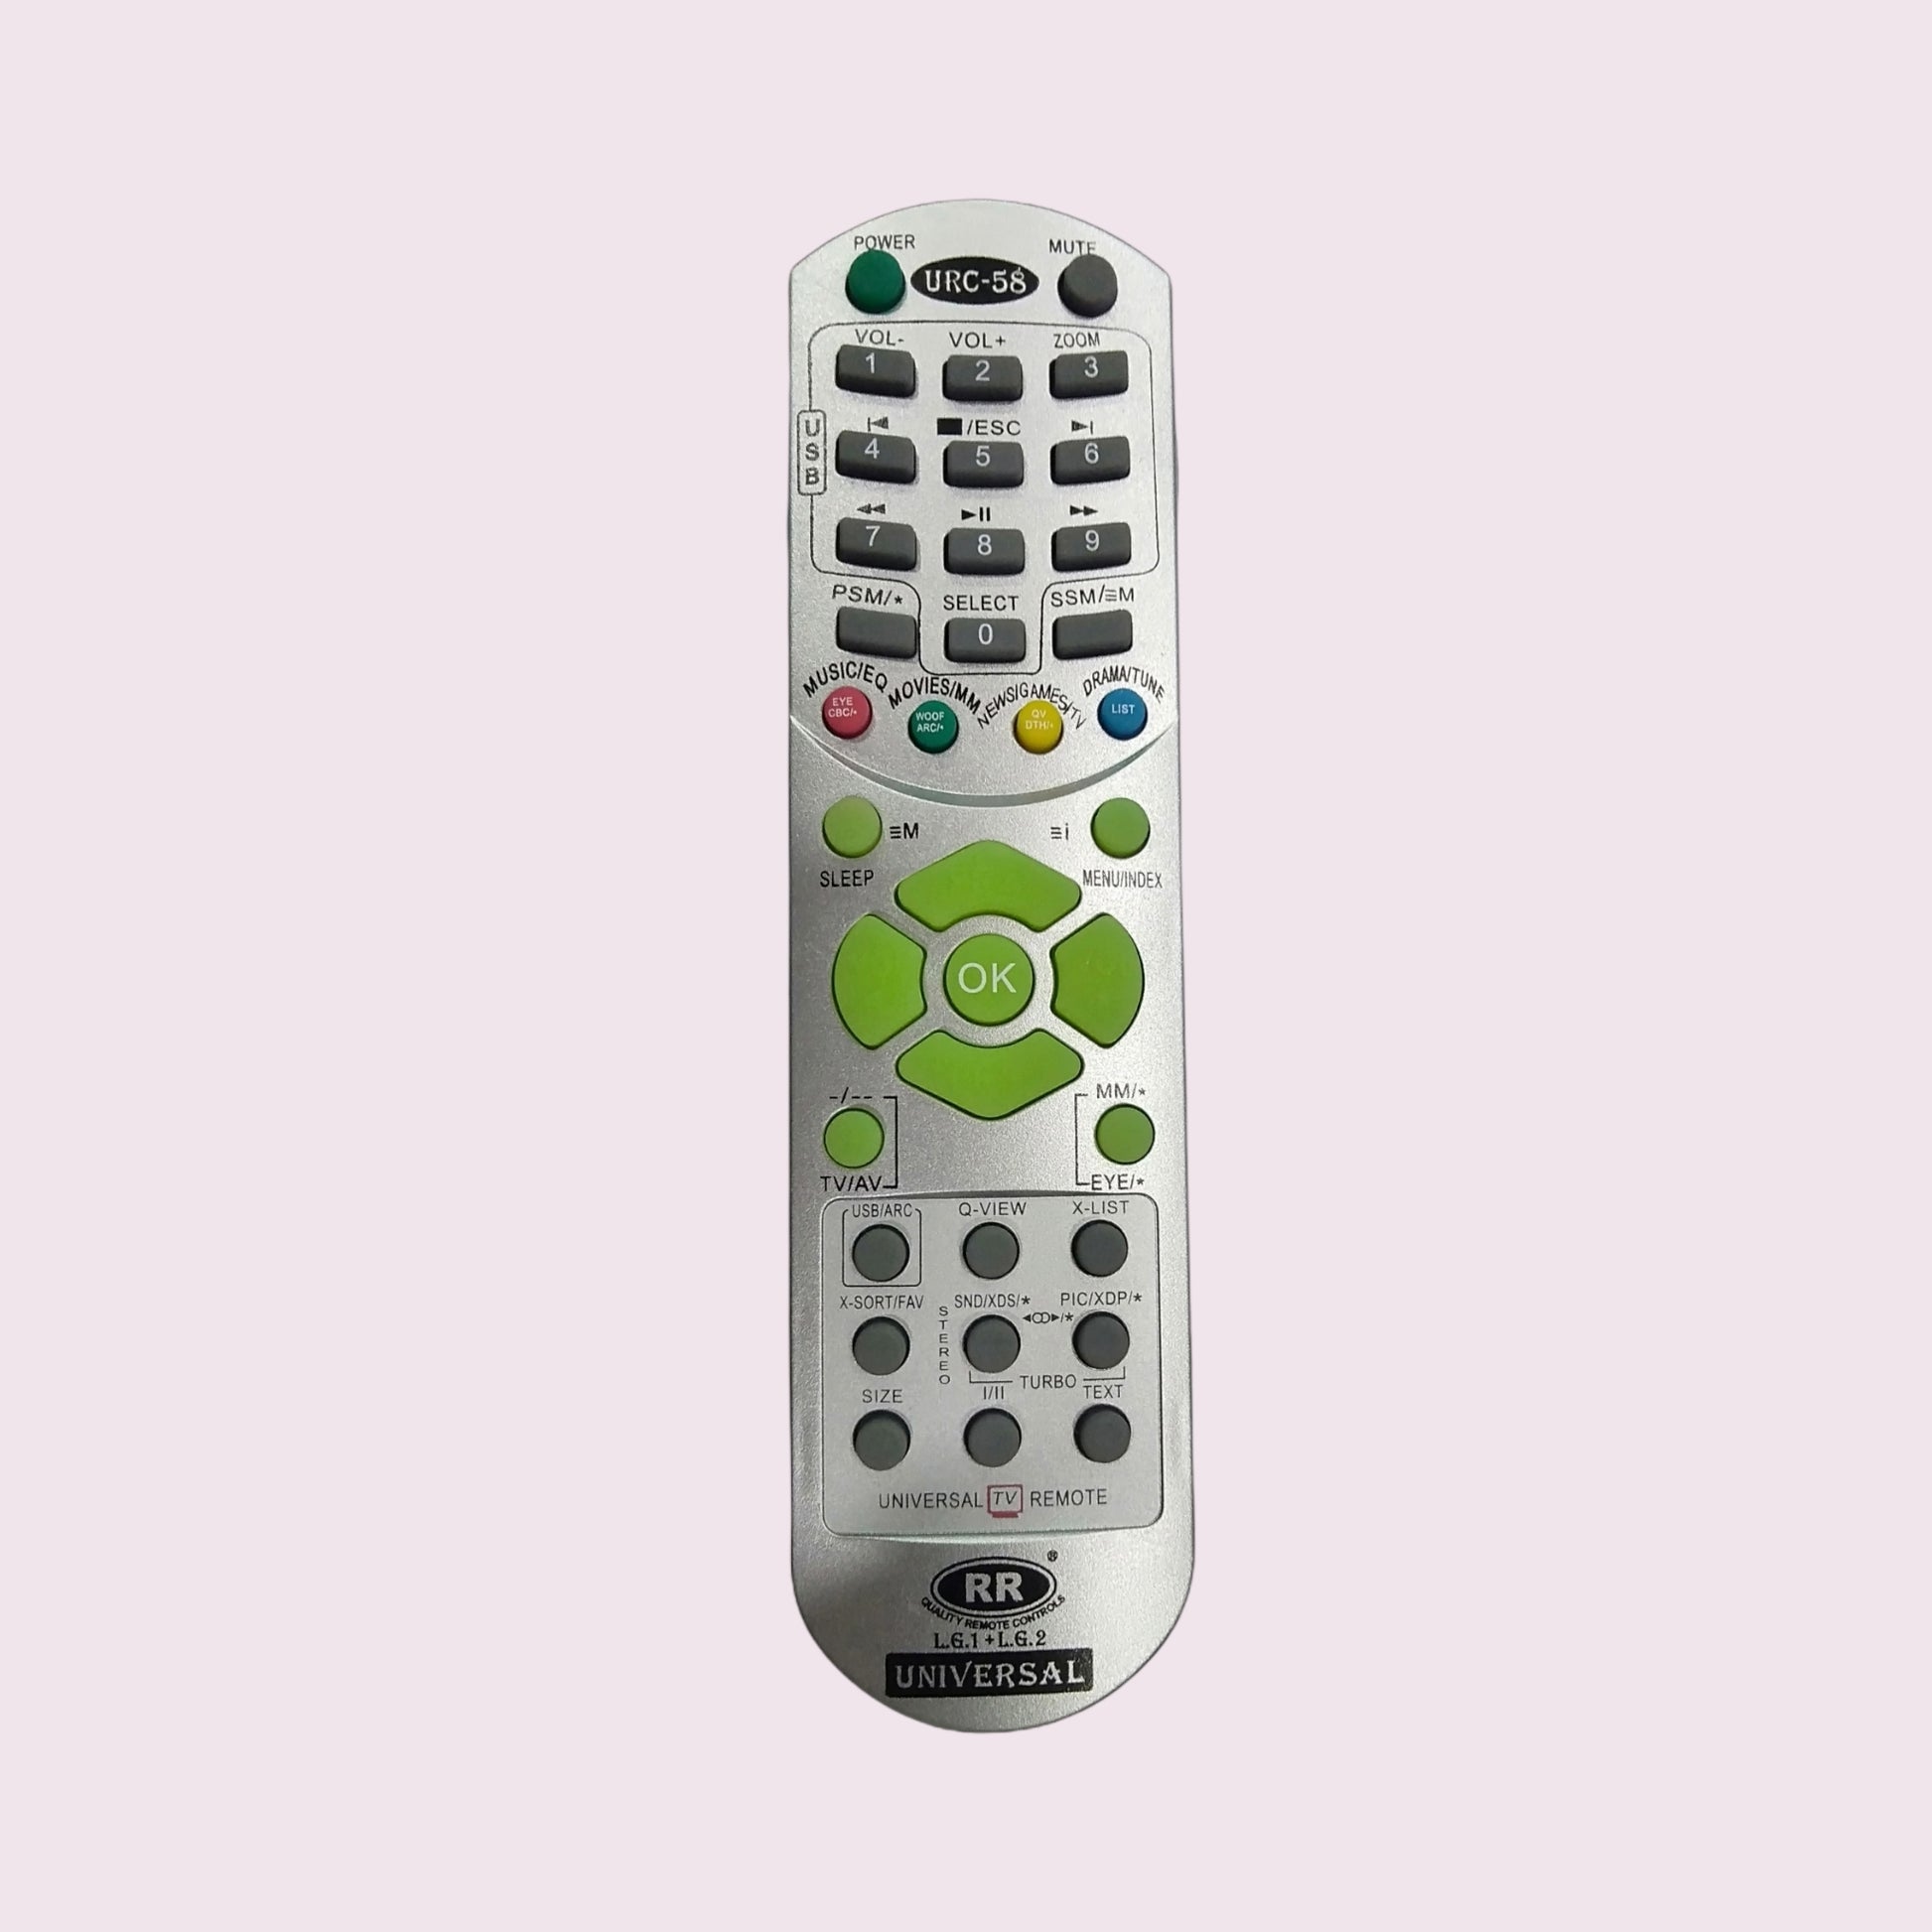 LG TV Universal Remote Controller (TV13) - Faritha